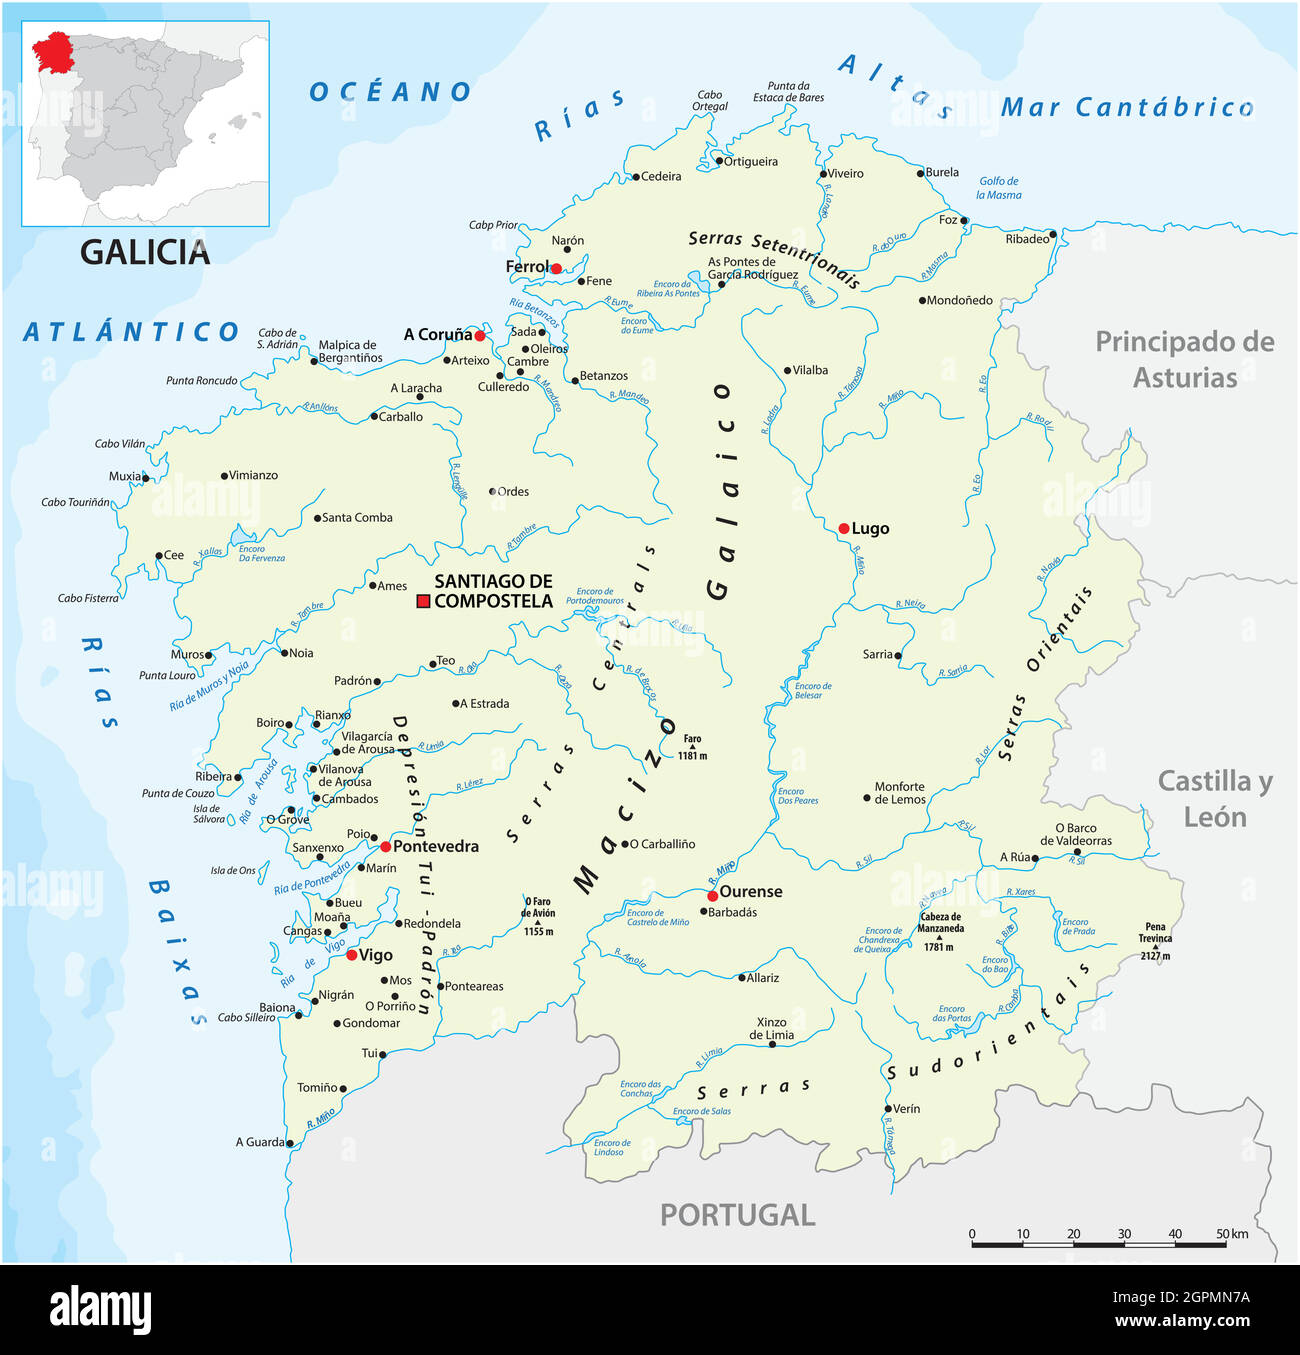 Pegatina Bandera Galicia Mapa